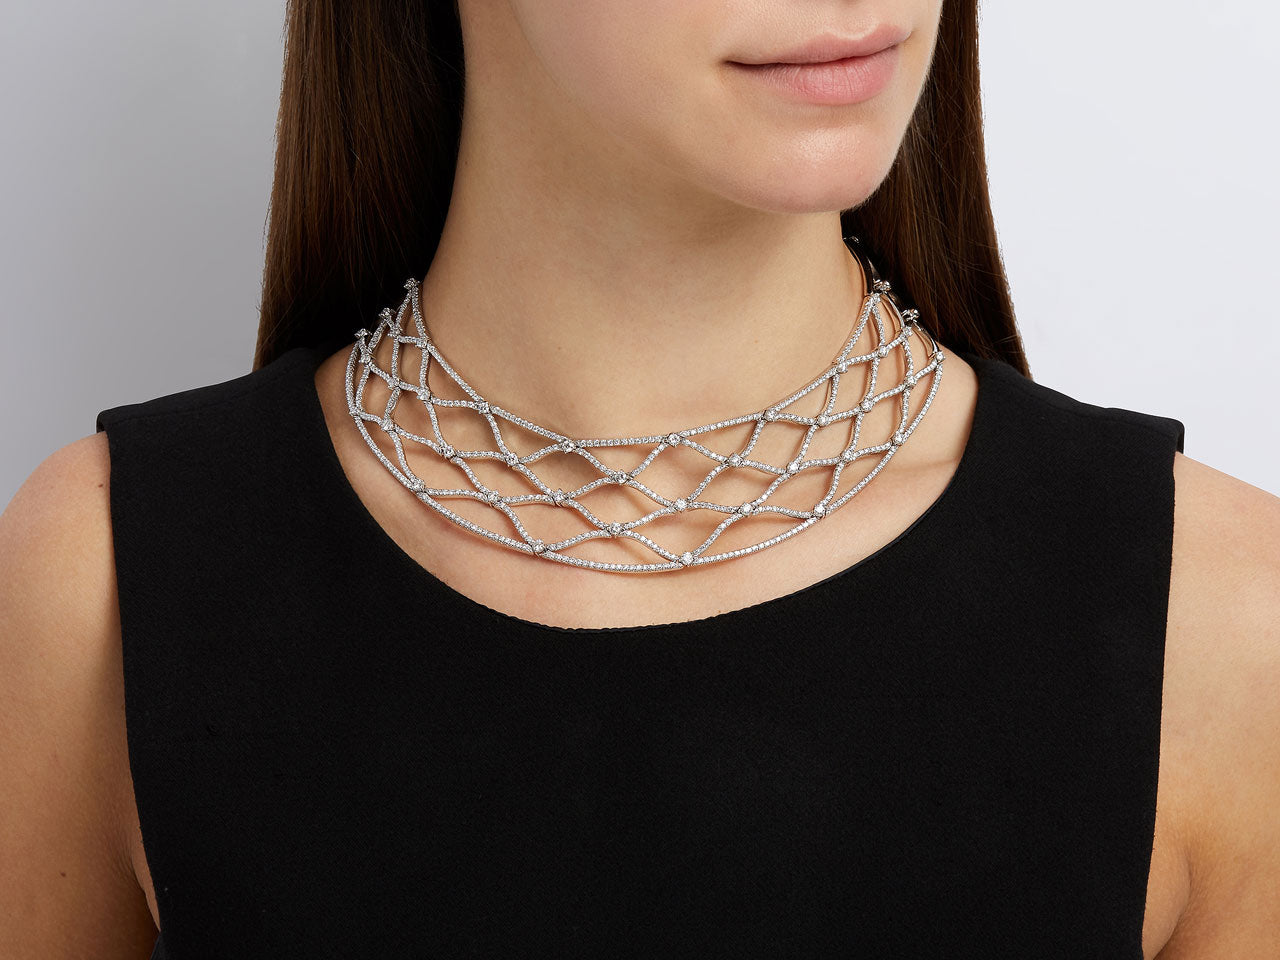 Stefan Hafner 'Fishnet' Diamond Necklace in 18K White Gold